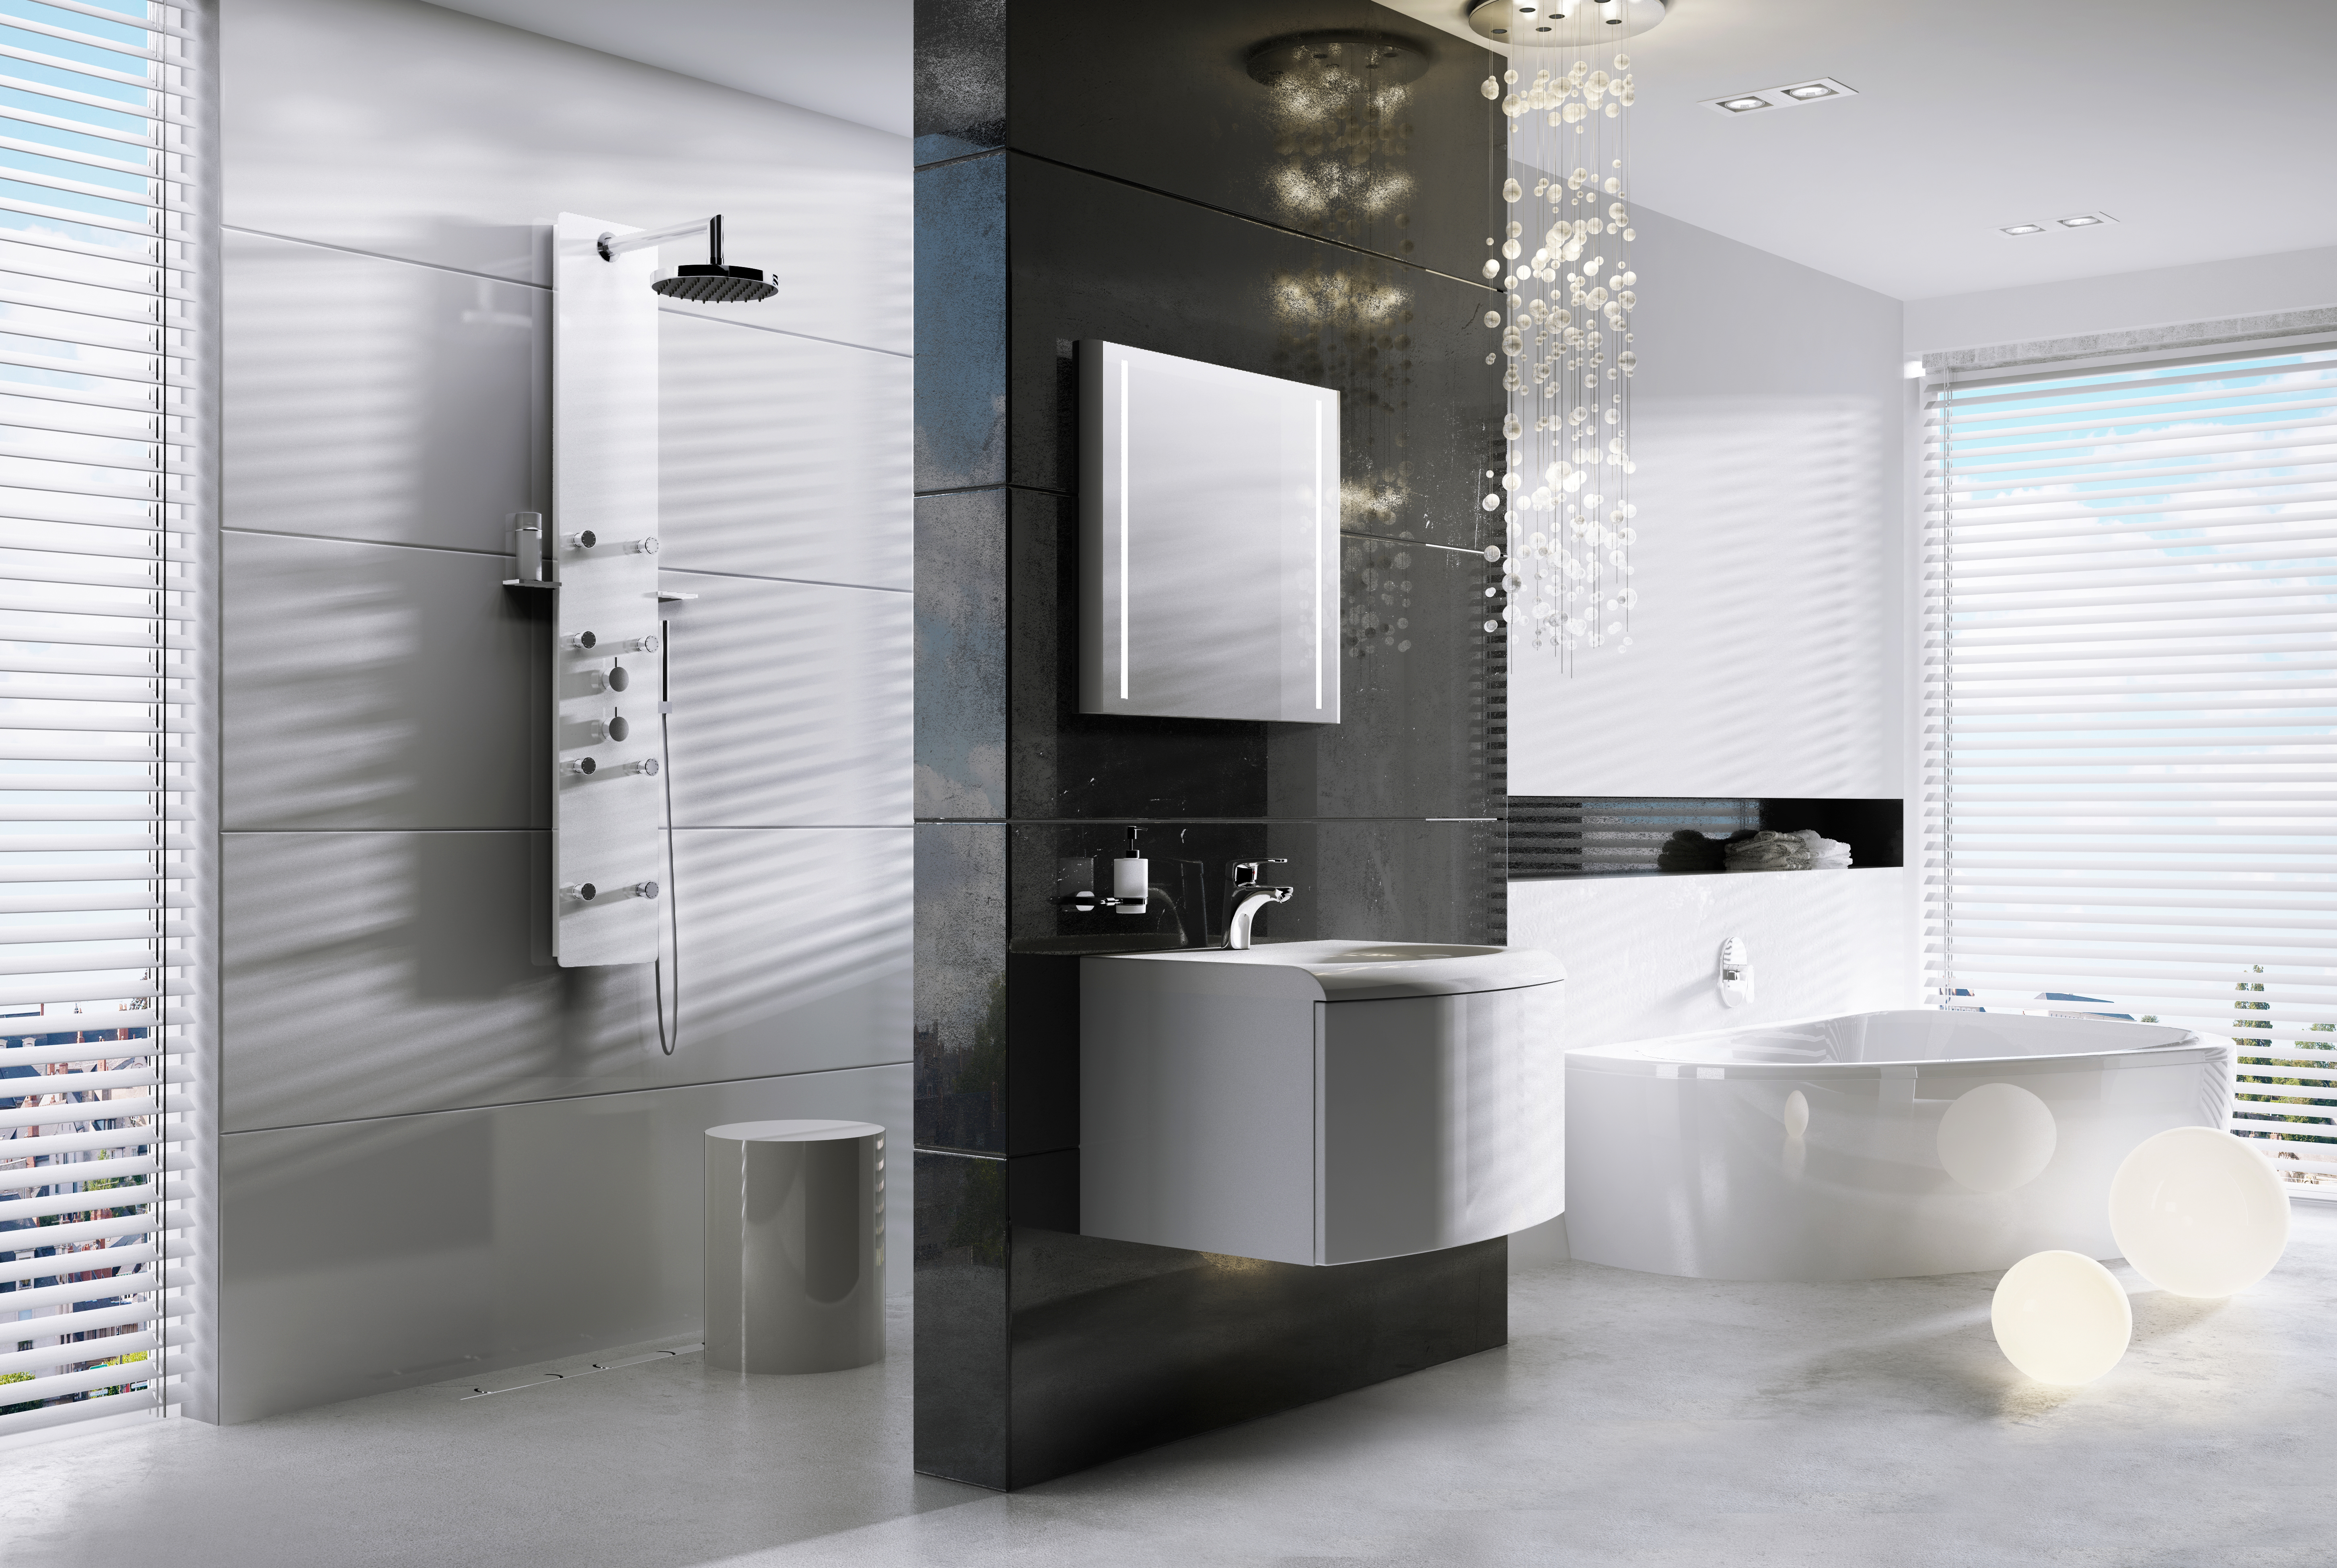 A Jet Glass hidromasszázs panel fantasztikus fürdőszoba perceket tartogat az Ön számára!